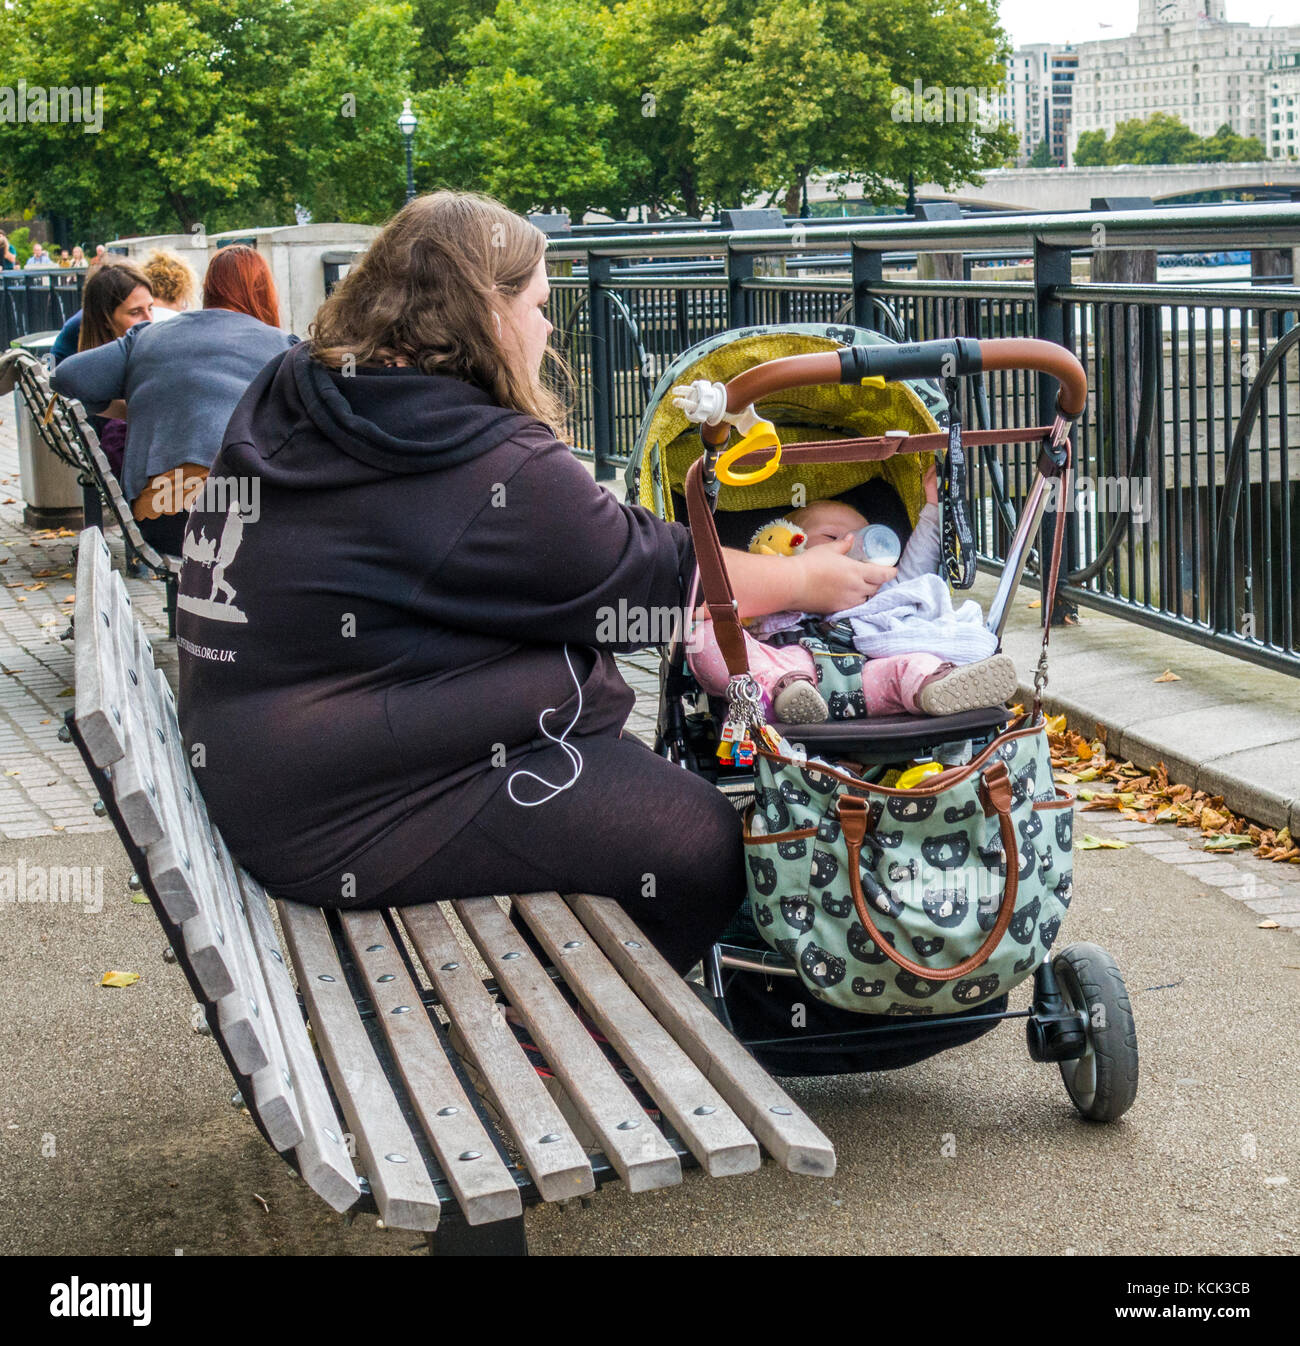 Il sovrappeso, genitore single, madre teenager, seduto su una panca in legno, allattamento al biberon il latte per il suo bambino in un passeggino, South Bank di Londra, Inghilterra, Regno Unito. Foto Stock